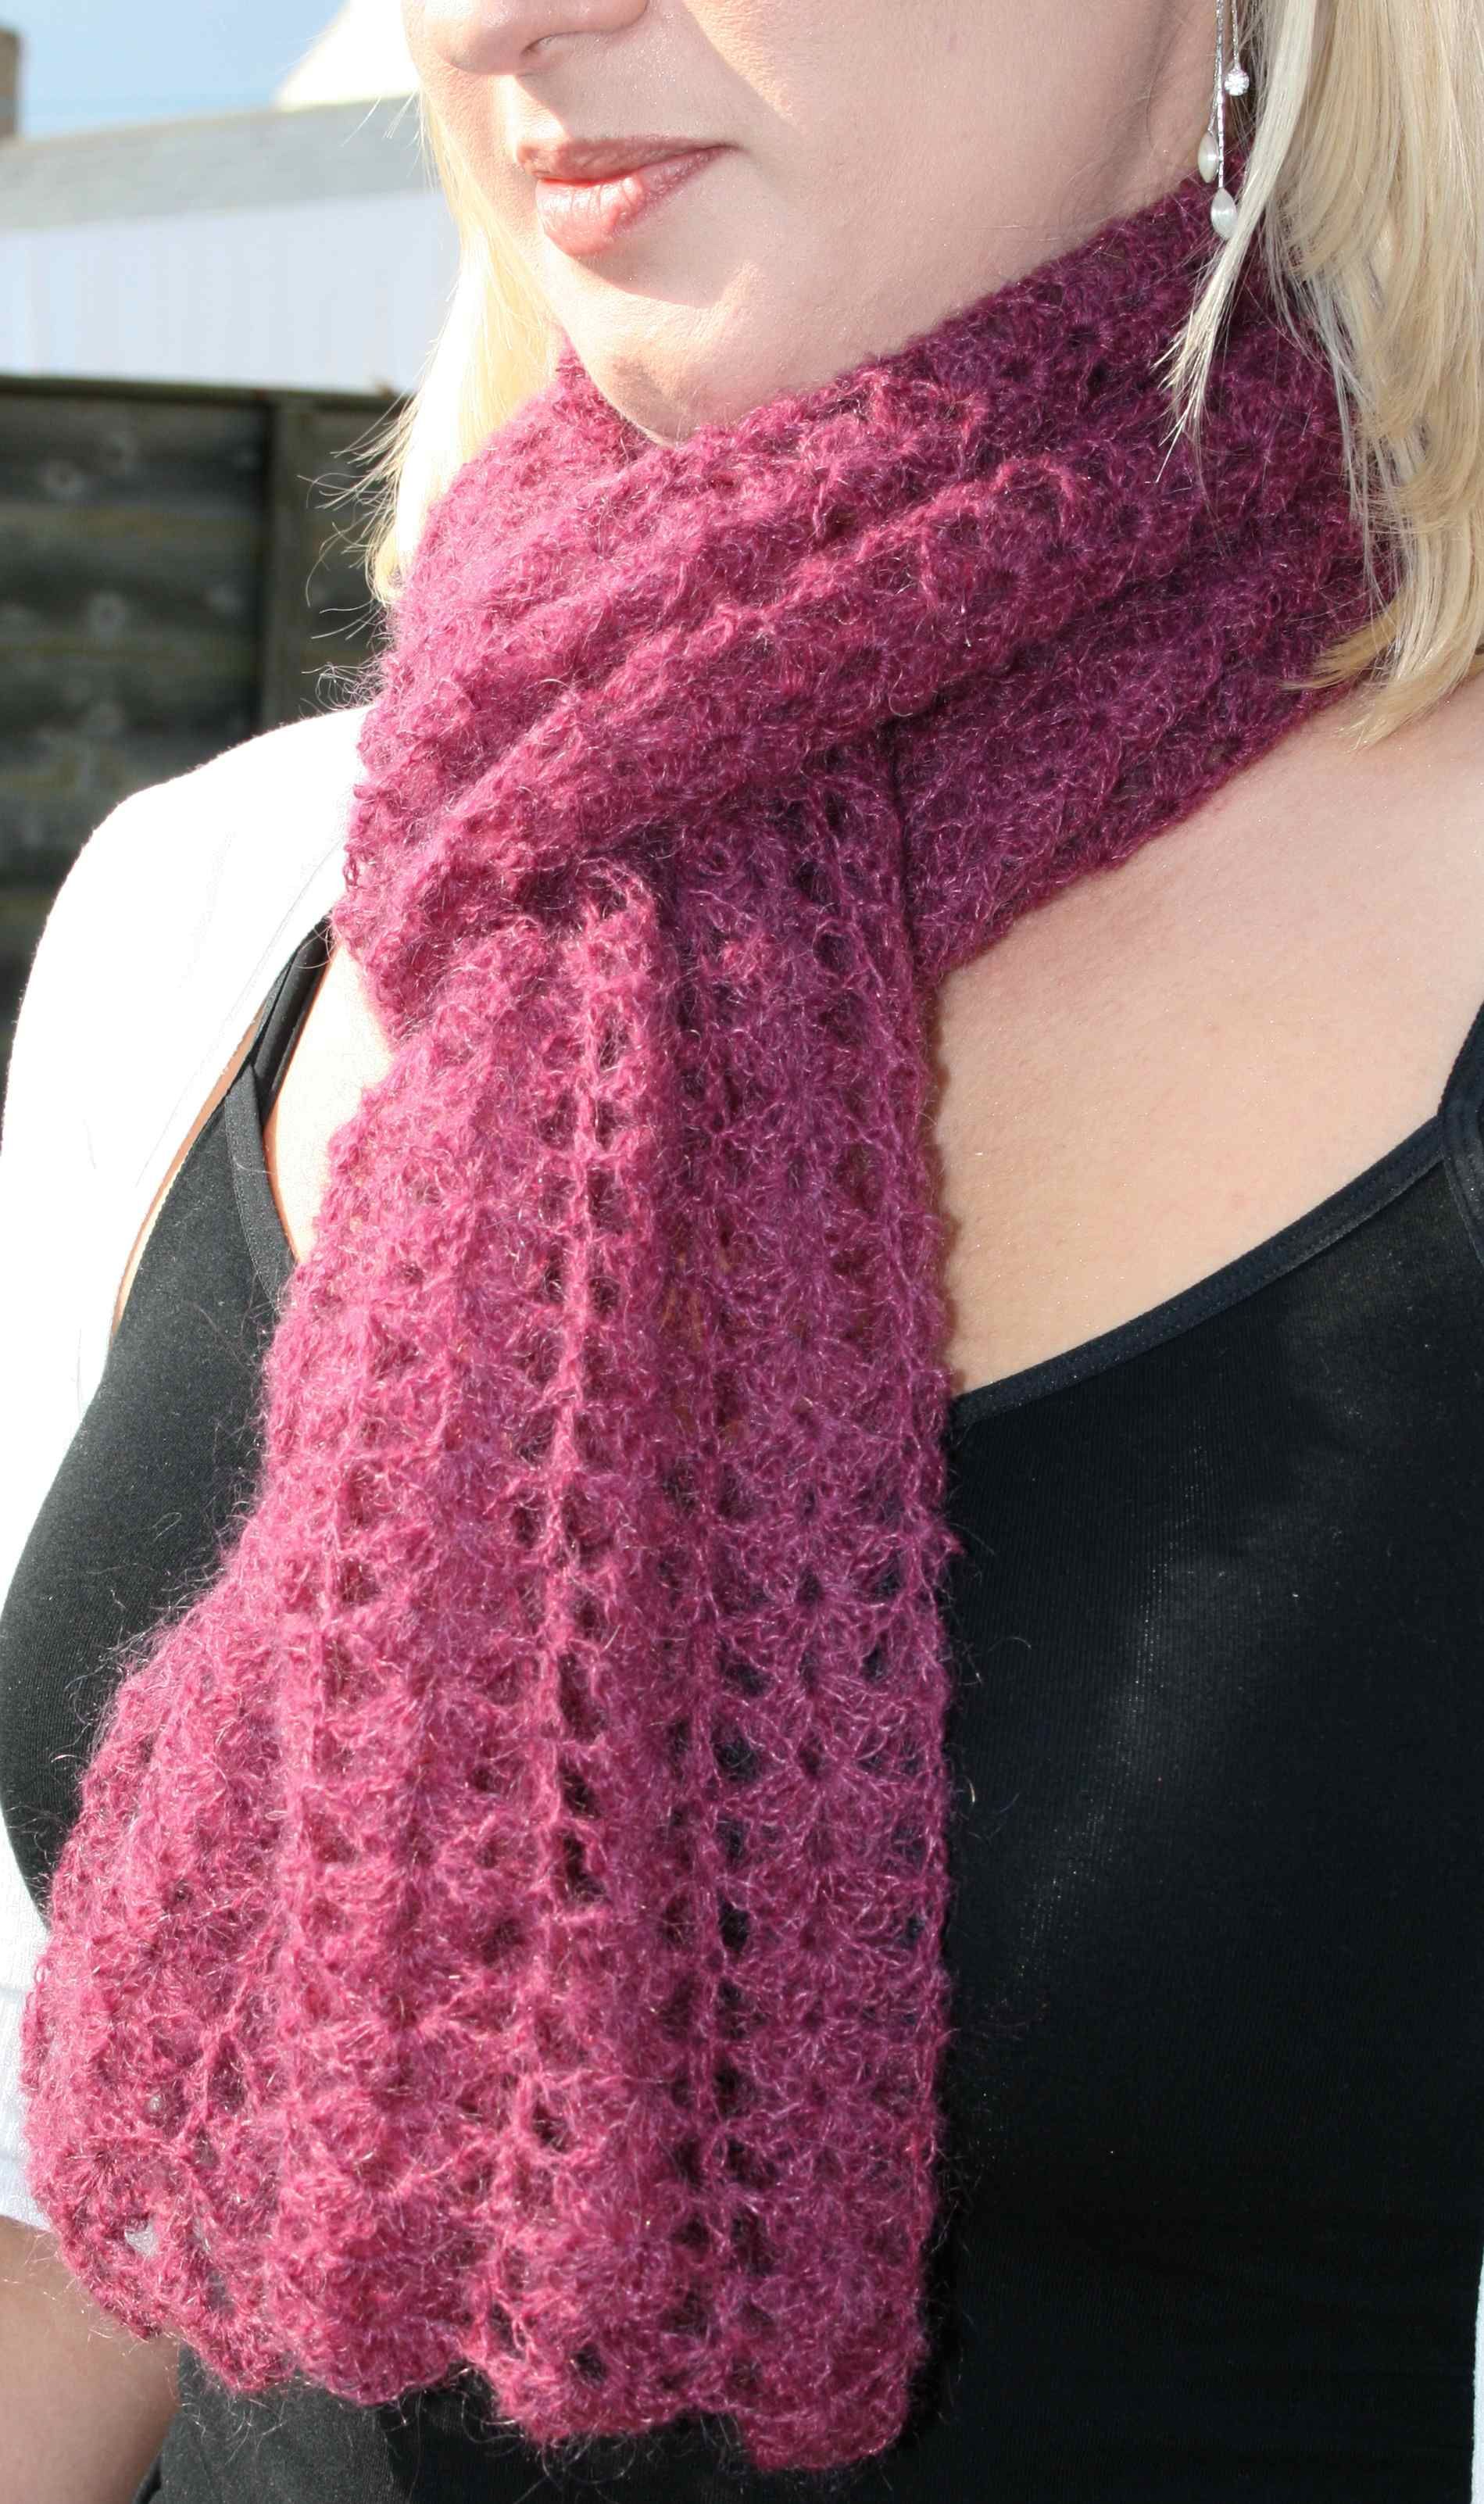 very cute lacy pattern | Crochet scarf pattern free, Crochet lace scarf